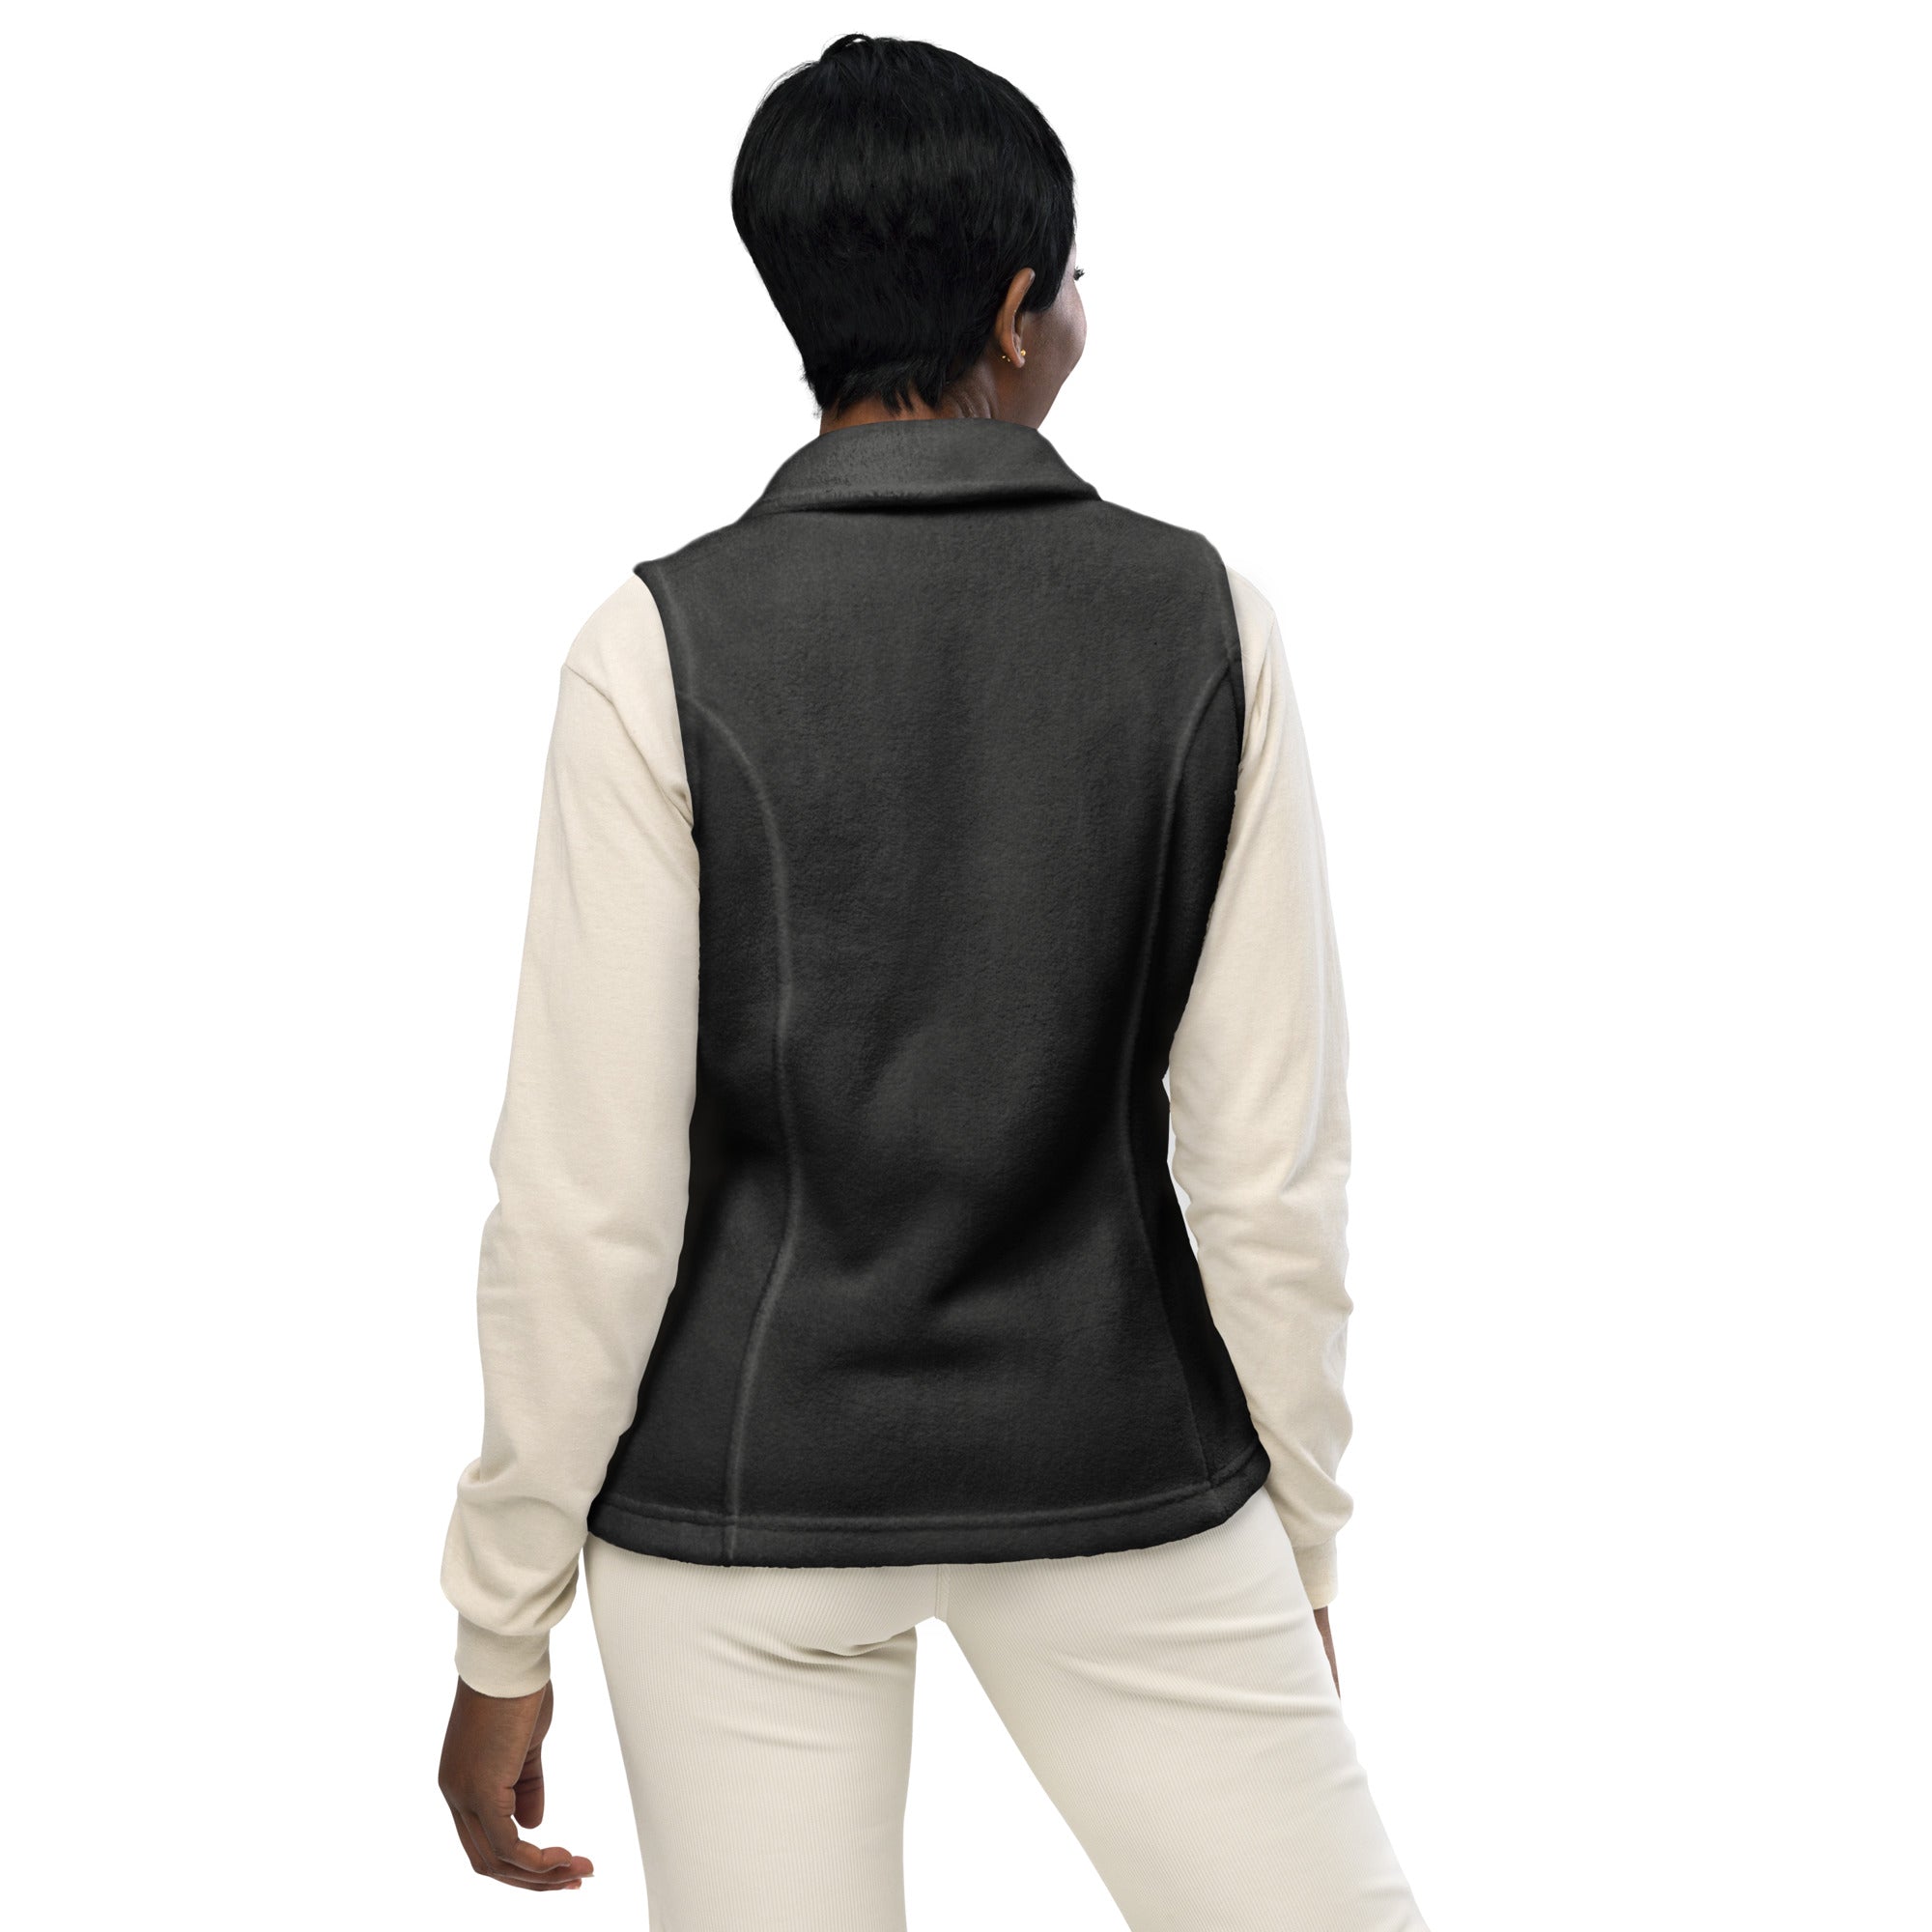 Women’s Columbia fleece vest